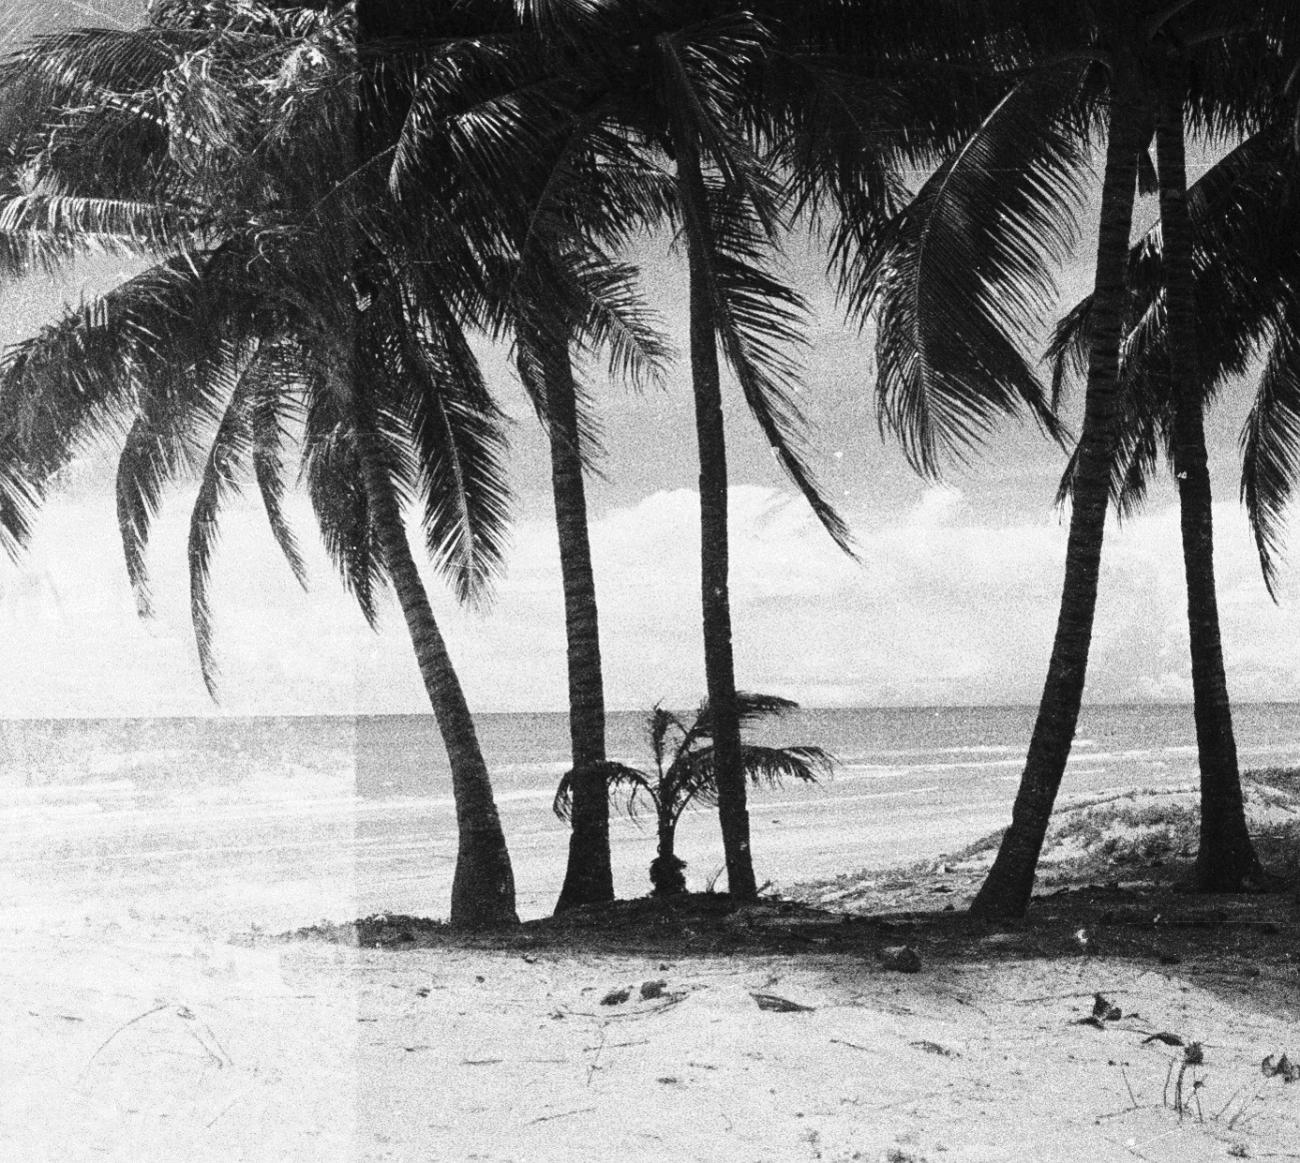 BD/133/821 - 
Palmbomen met zee en strand
